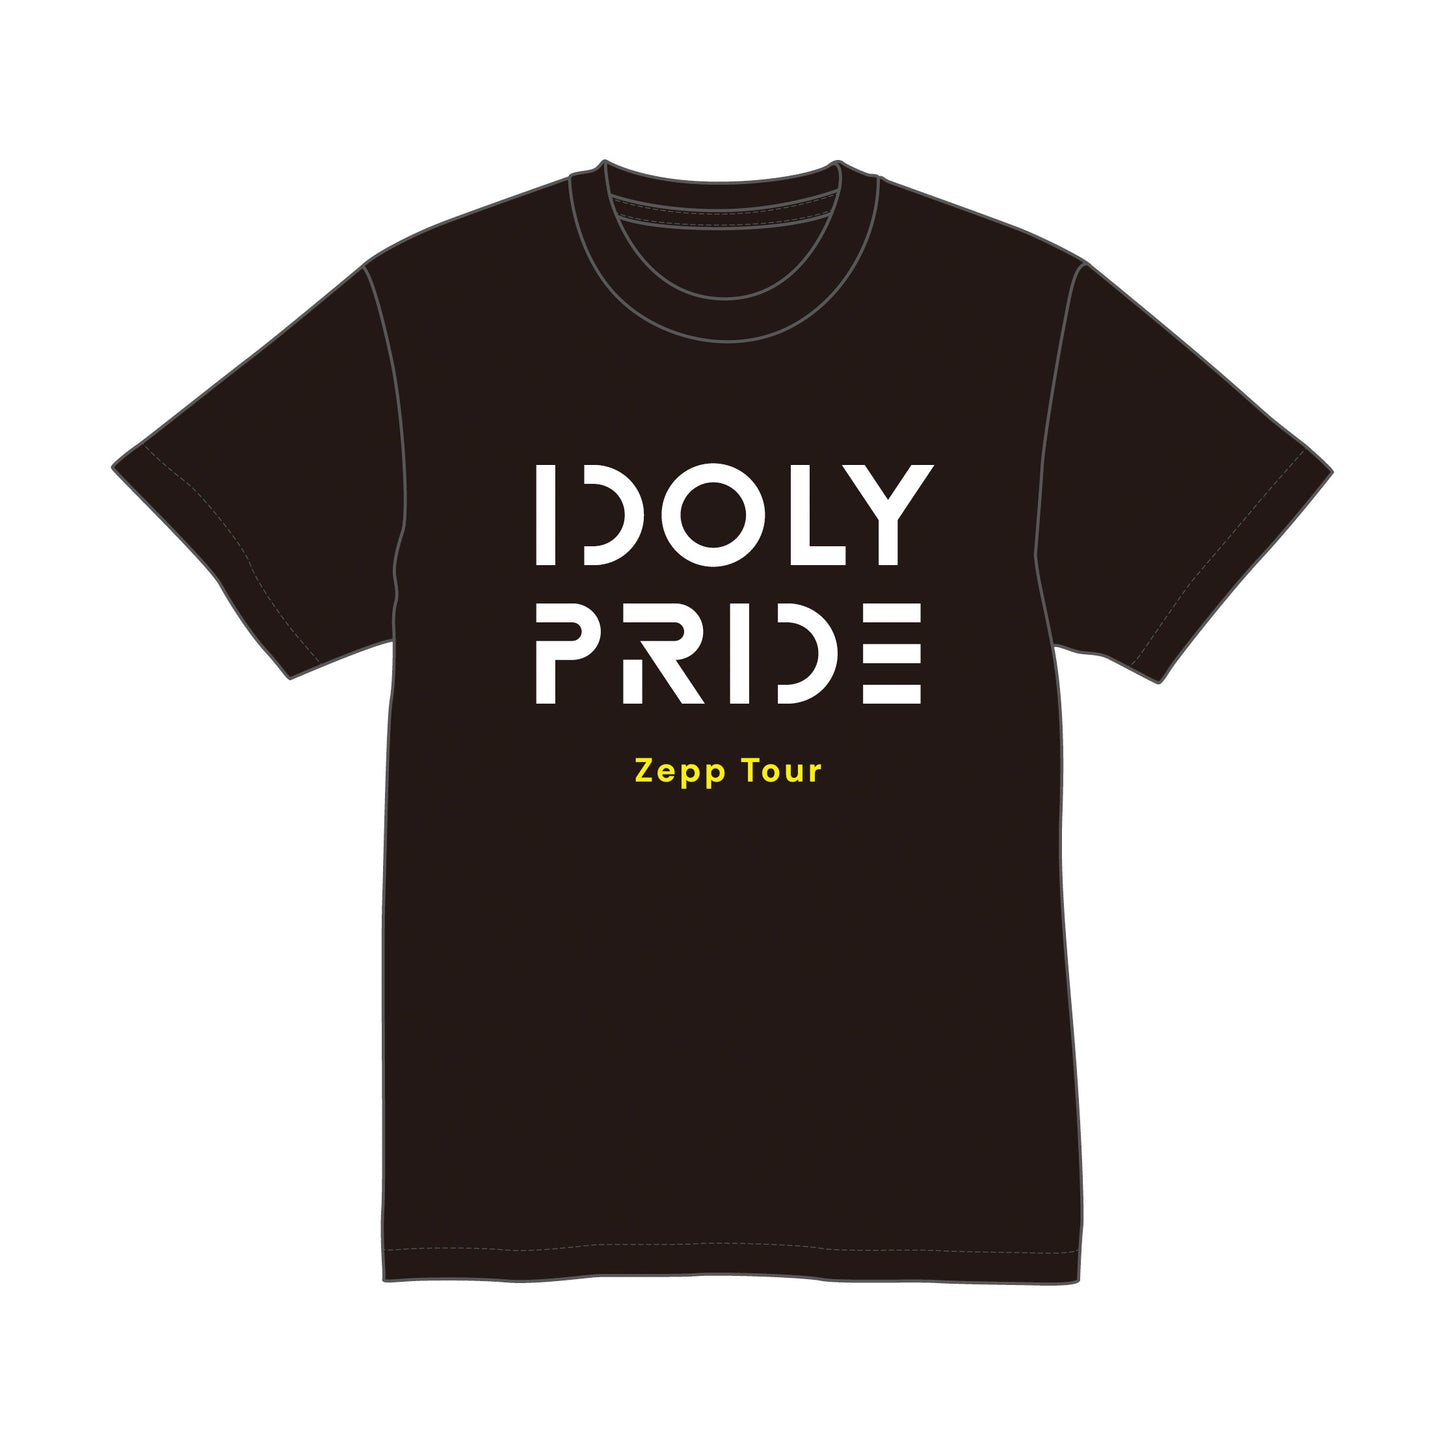 IDOLY PRIDE Zepp Tour ライブTシャツ